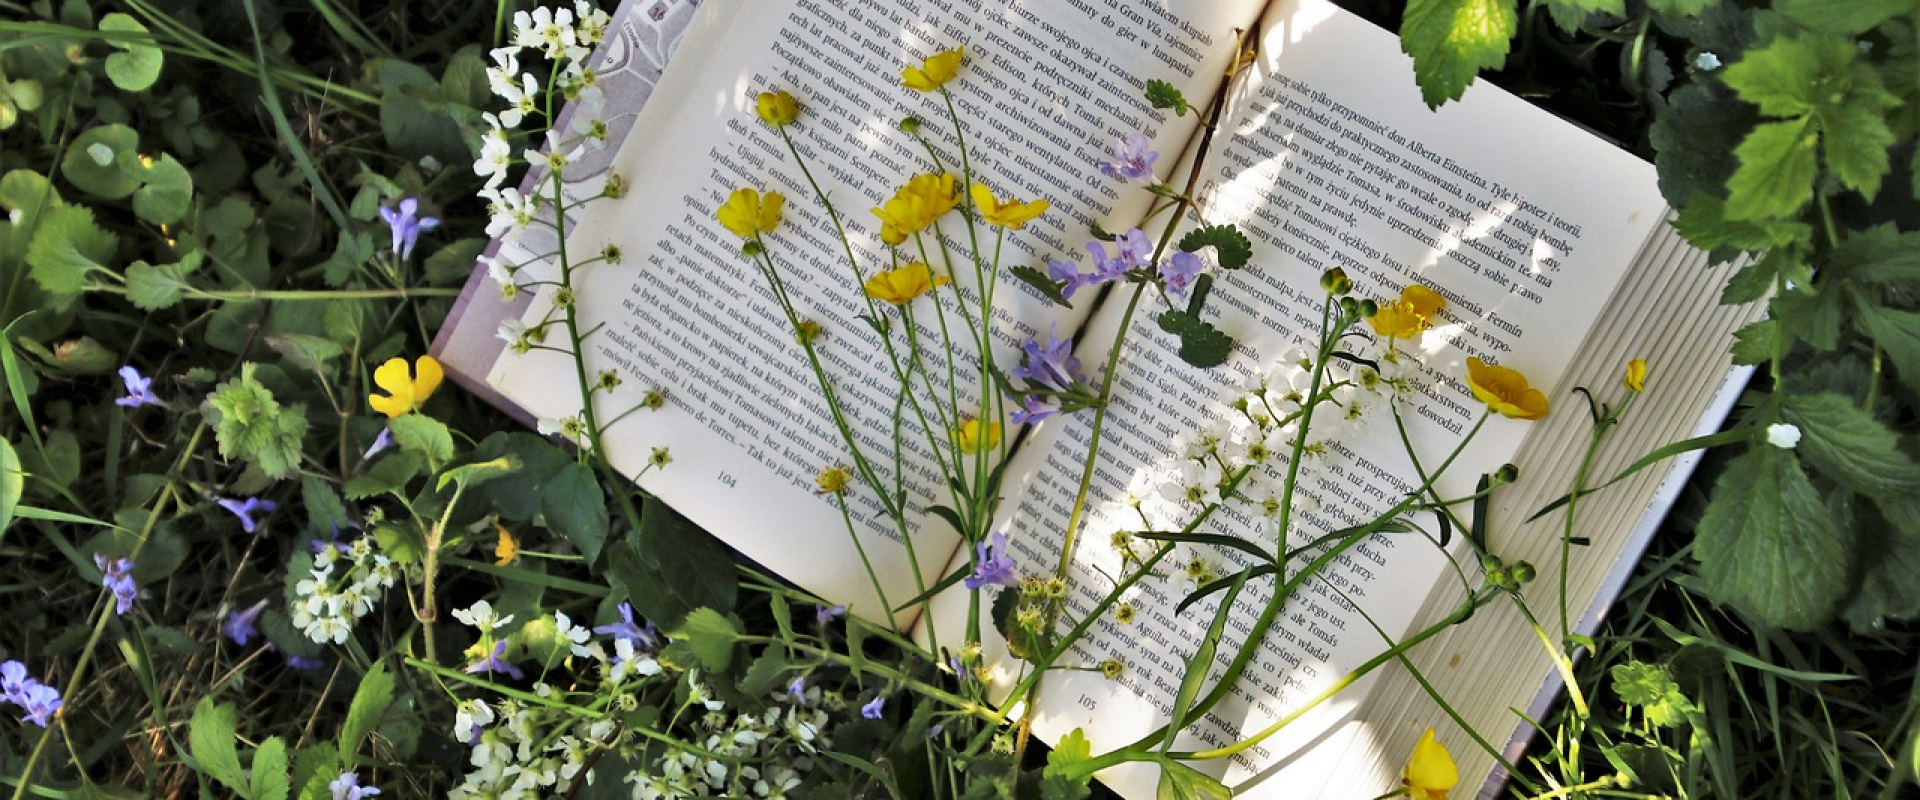 livre ouvert avec des fleurs et herbe